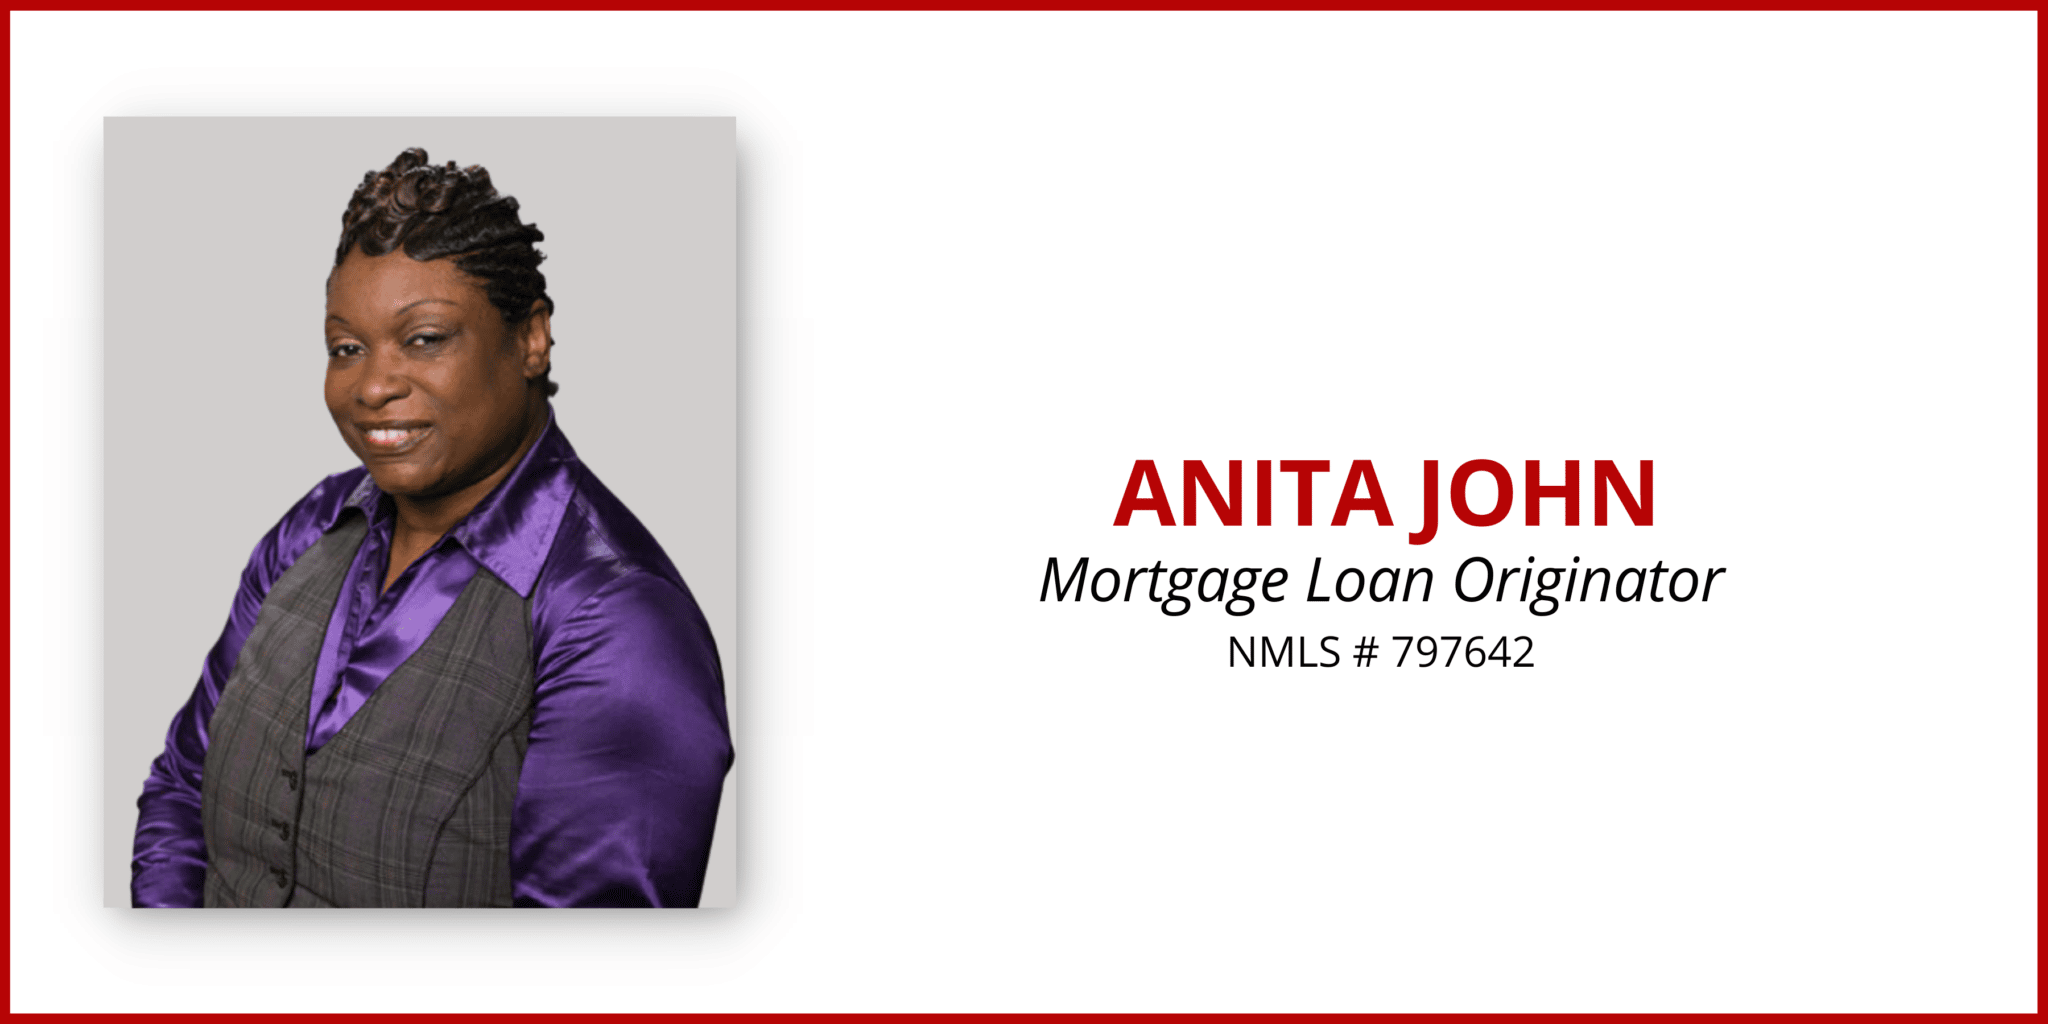 About Anita John – MortgageDepot